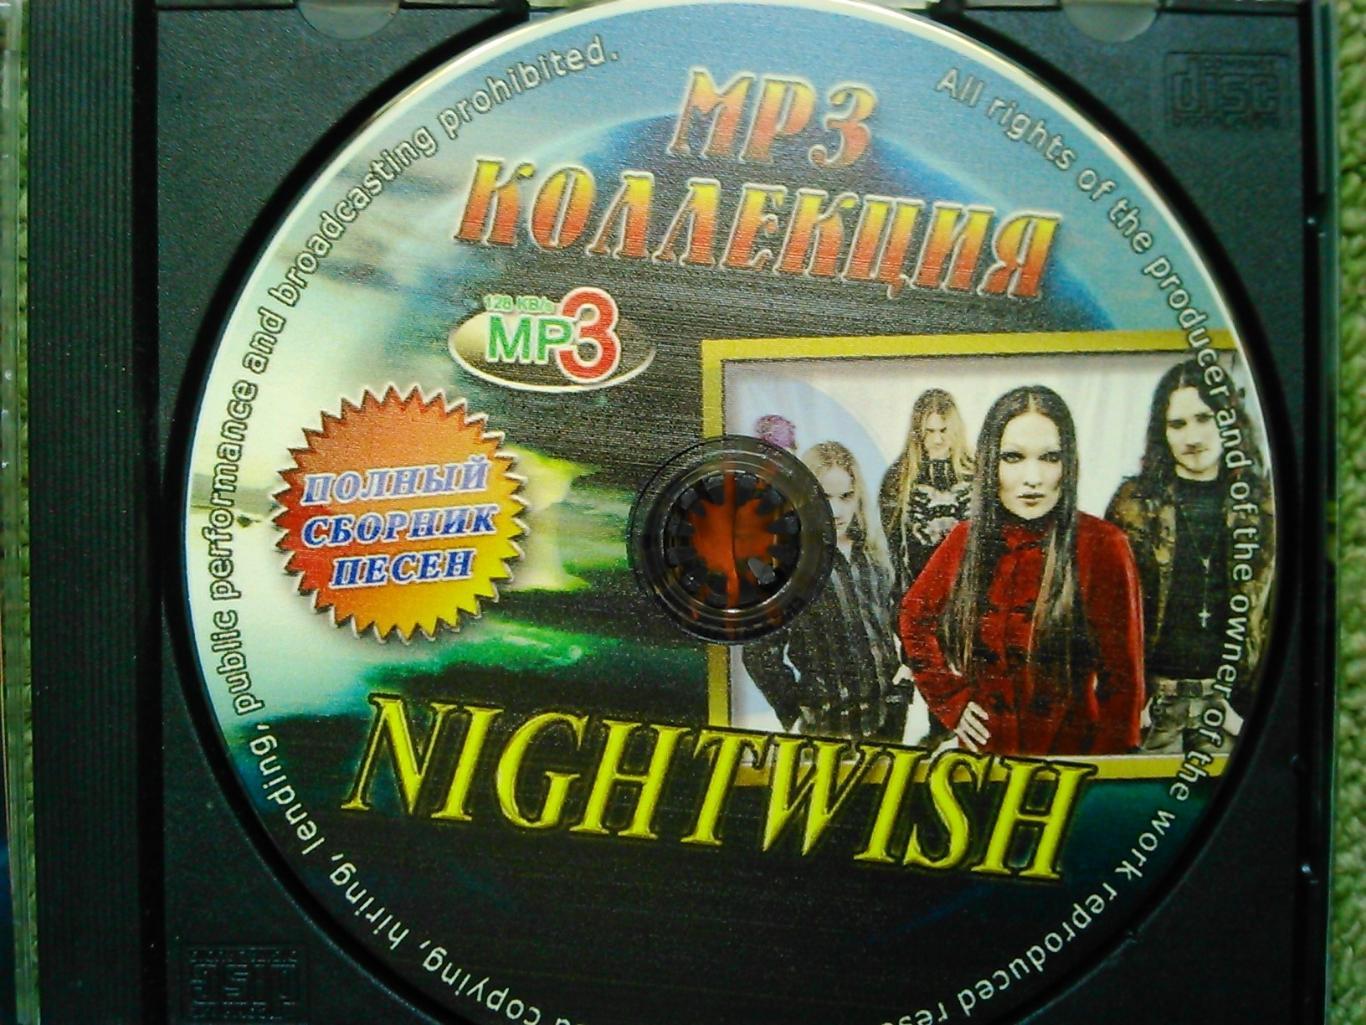 NIGHTWISH MP3 КОЛЛЕКЦИЯ 1997-2009. Оптом скидки до 45%! 1